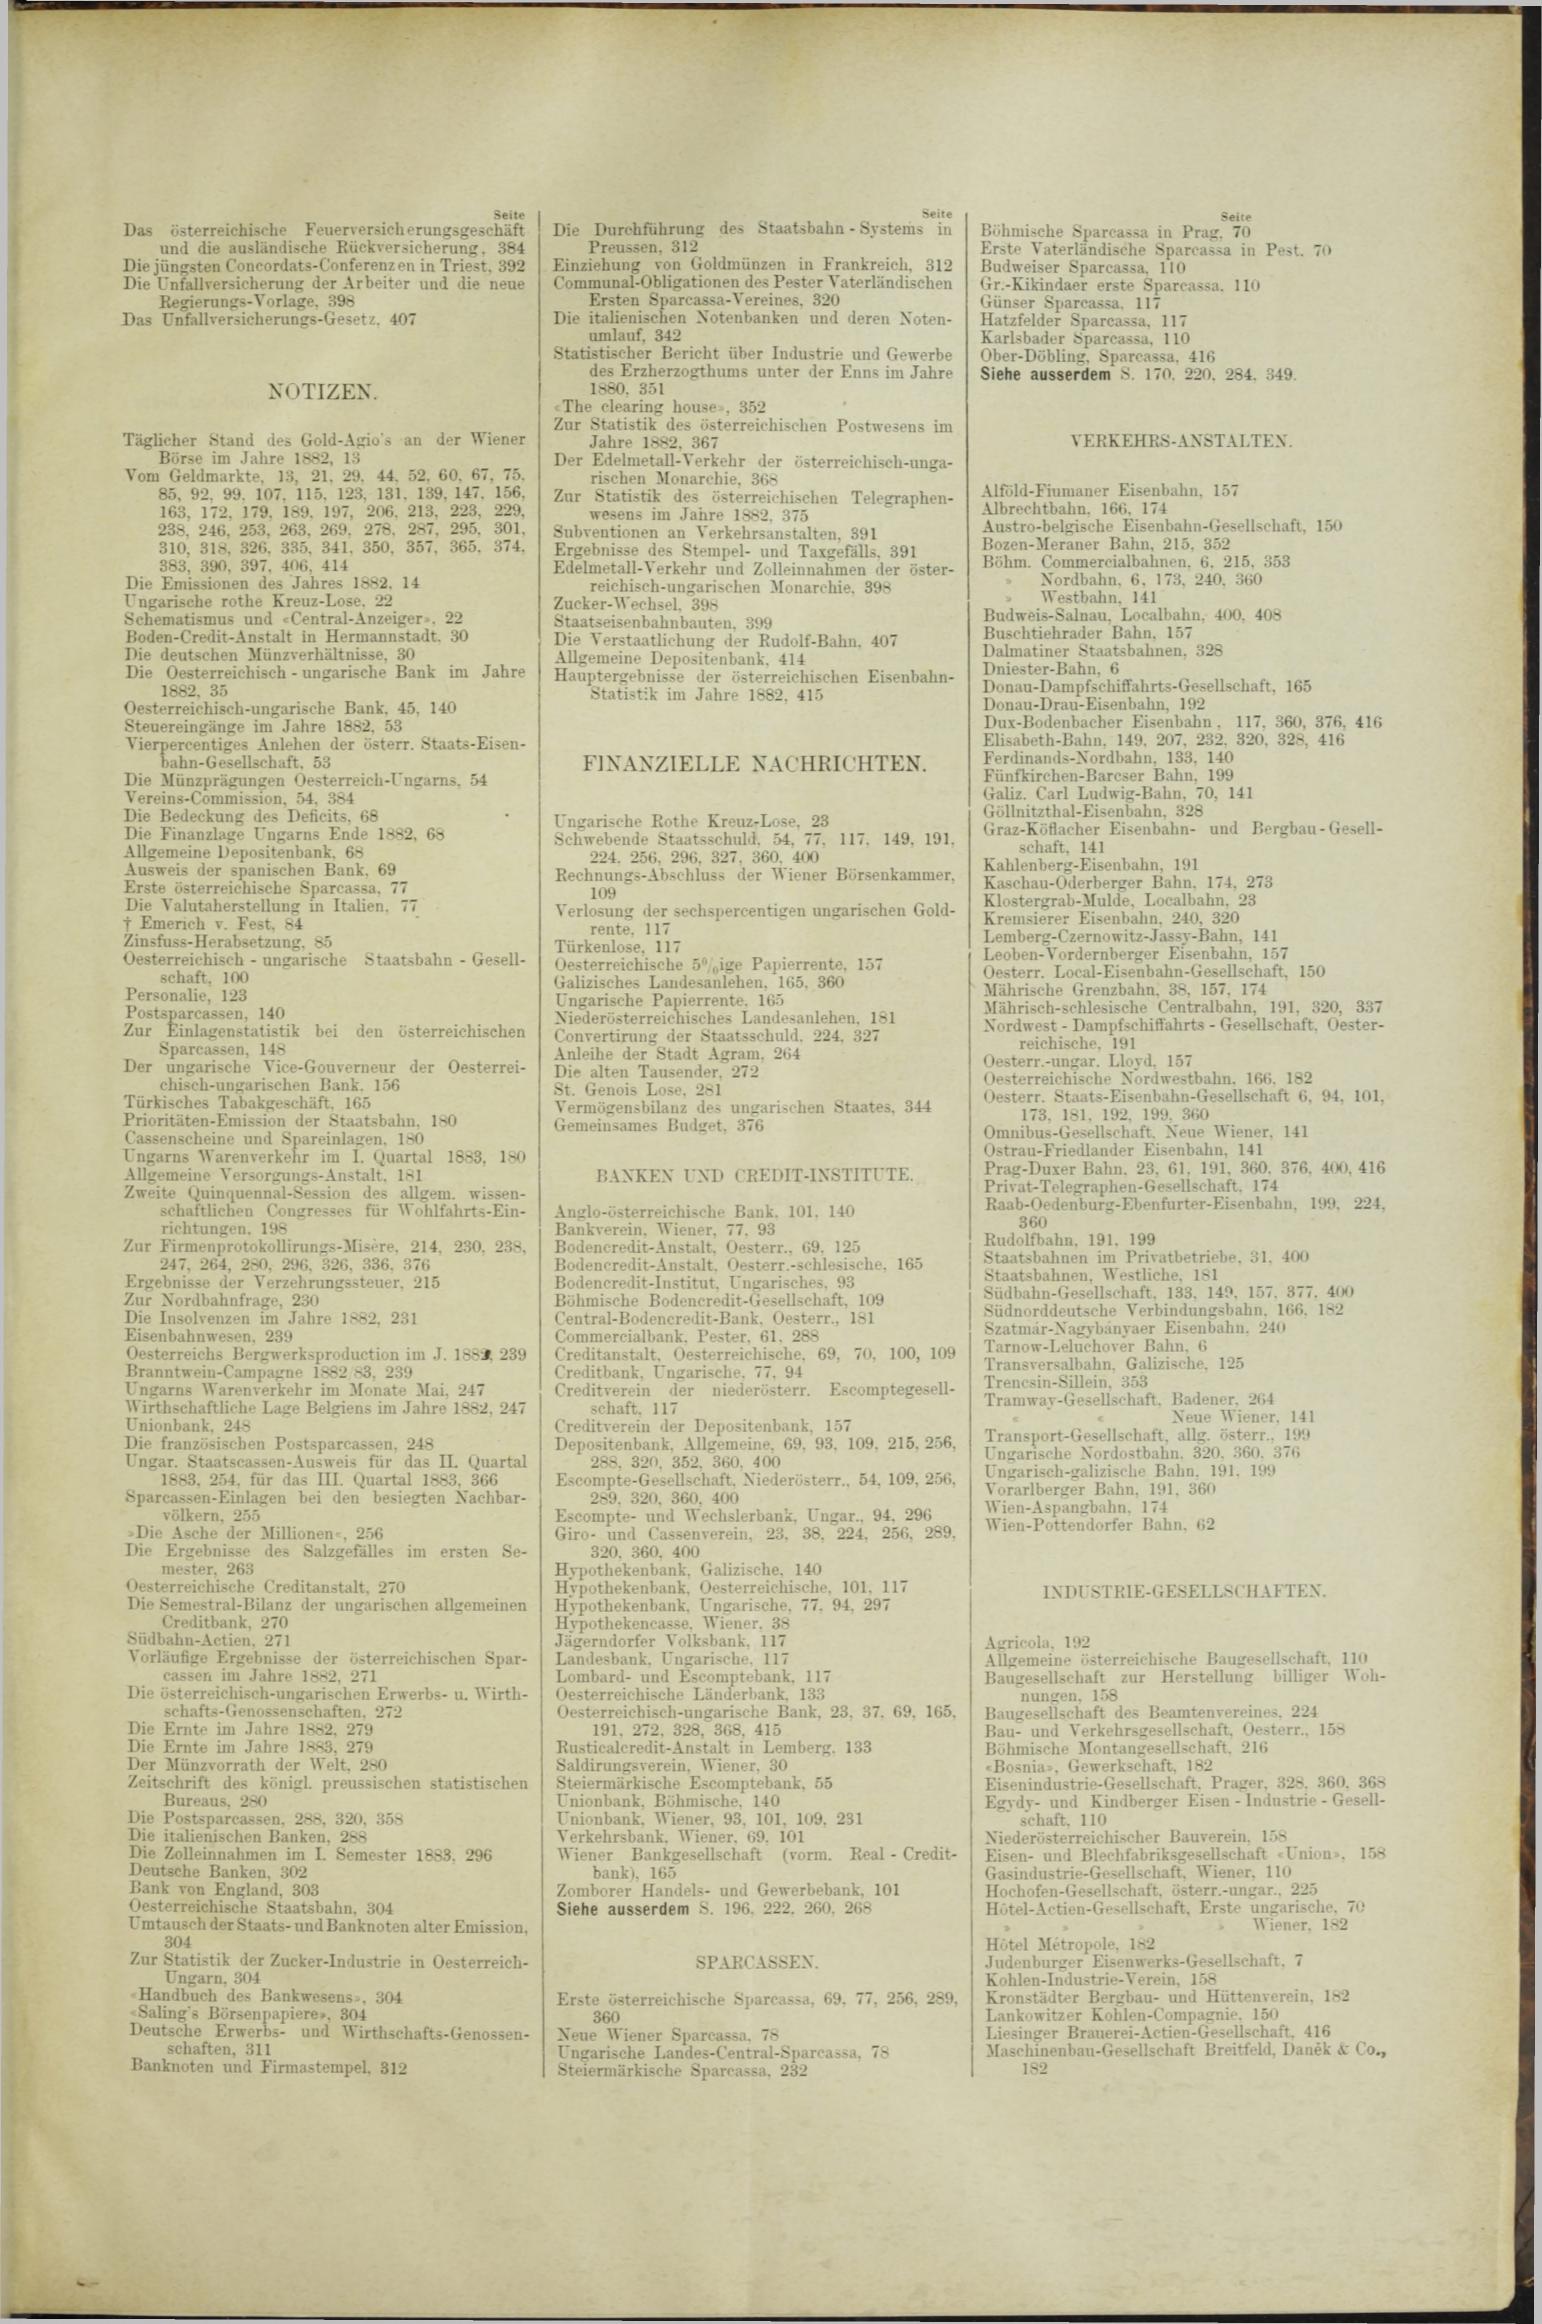 Der Tresor 02.08.1883 - Seite 11